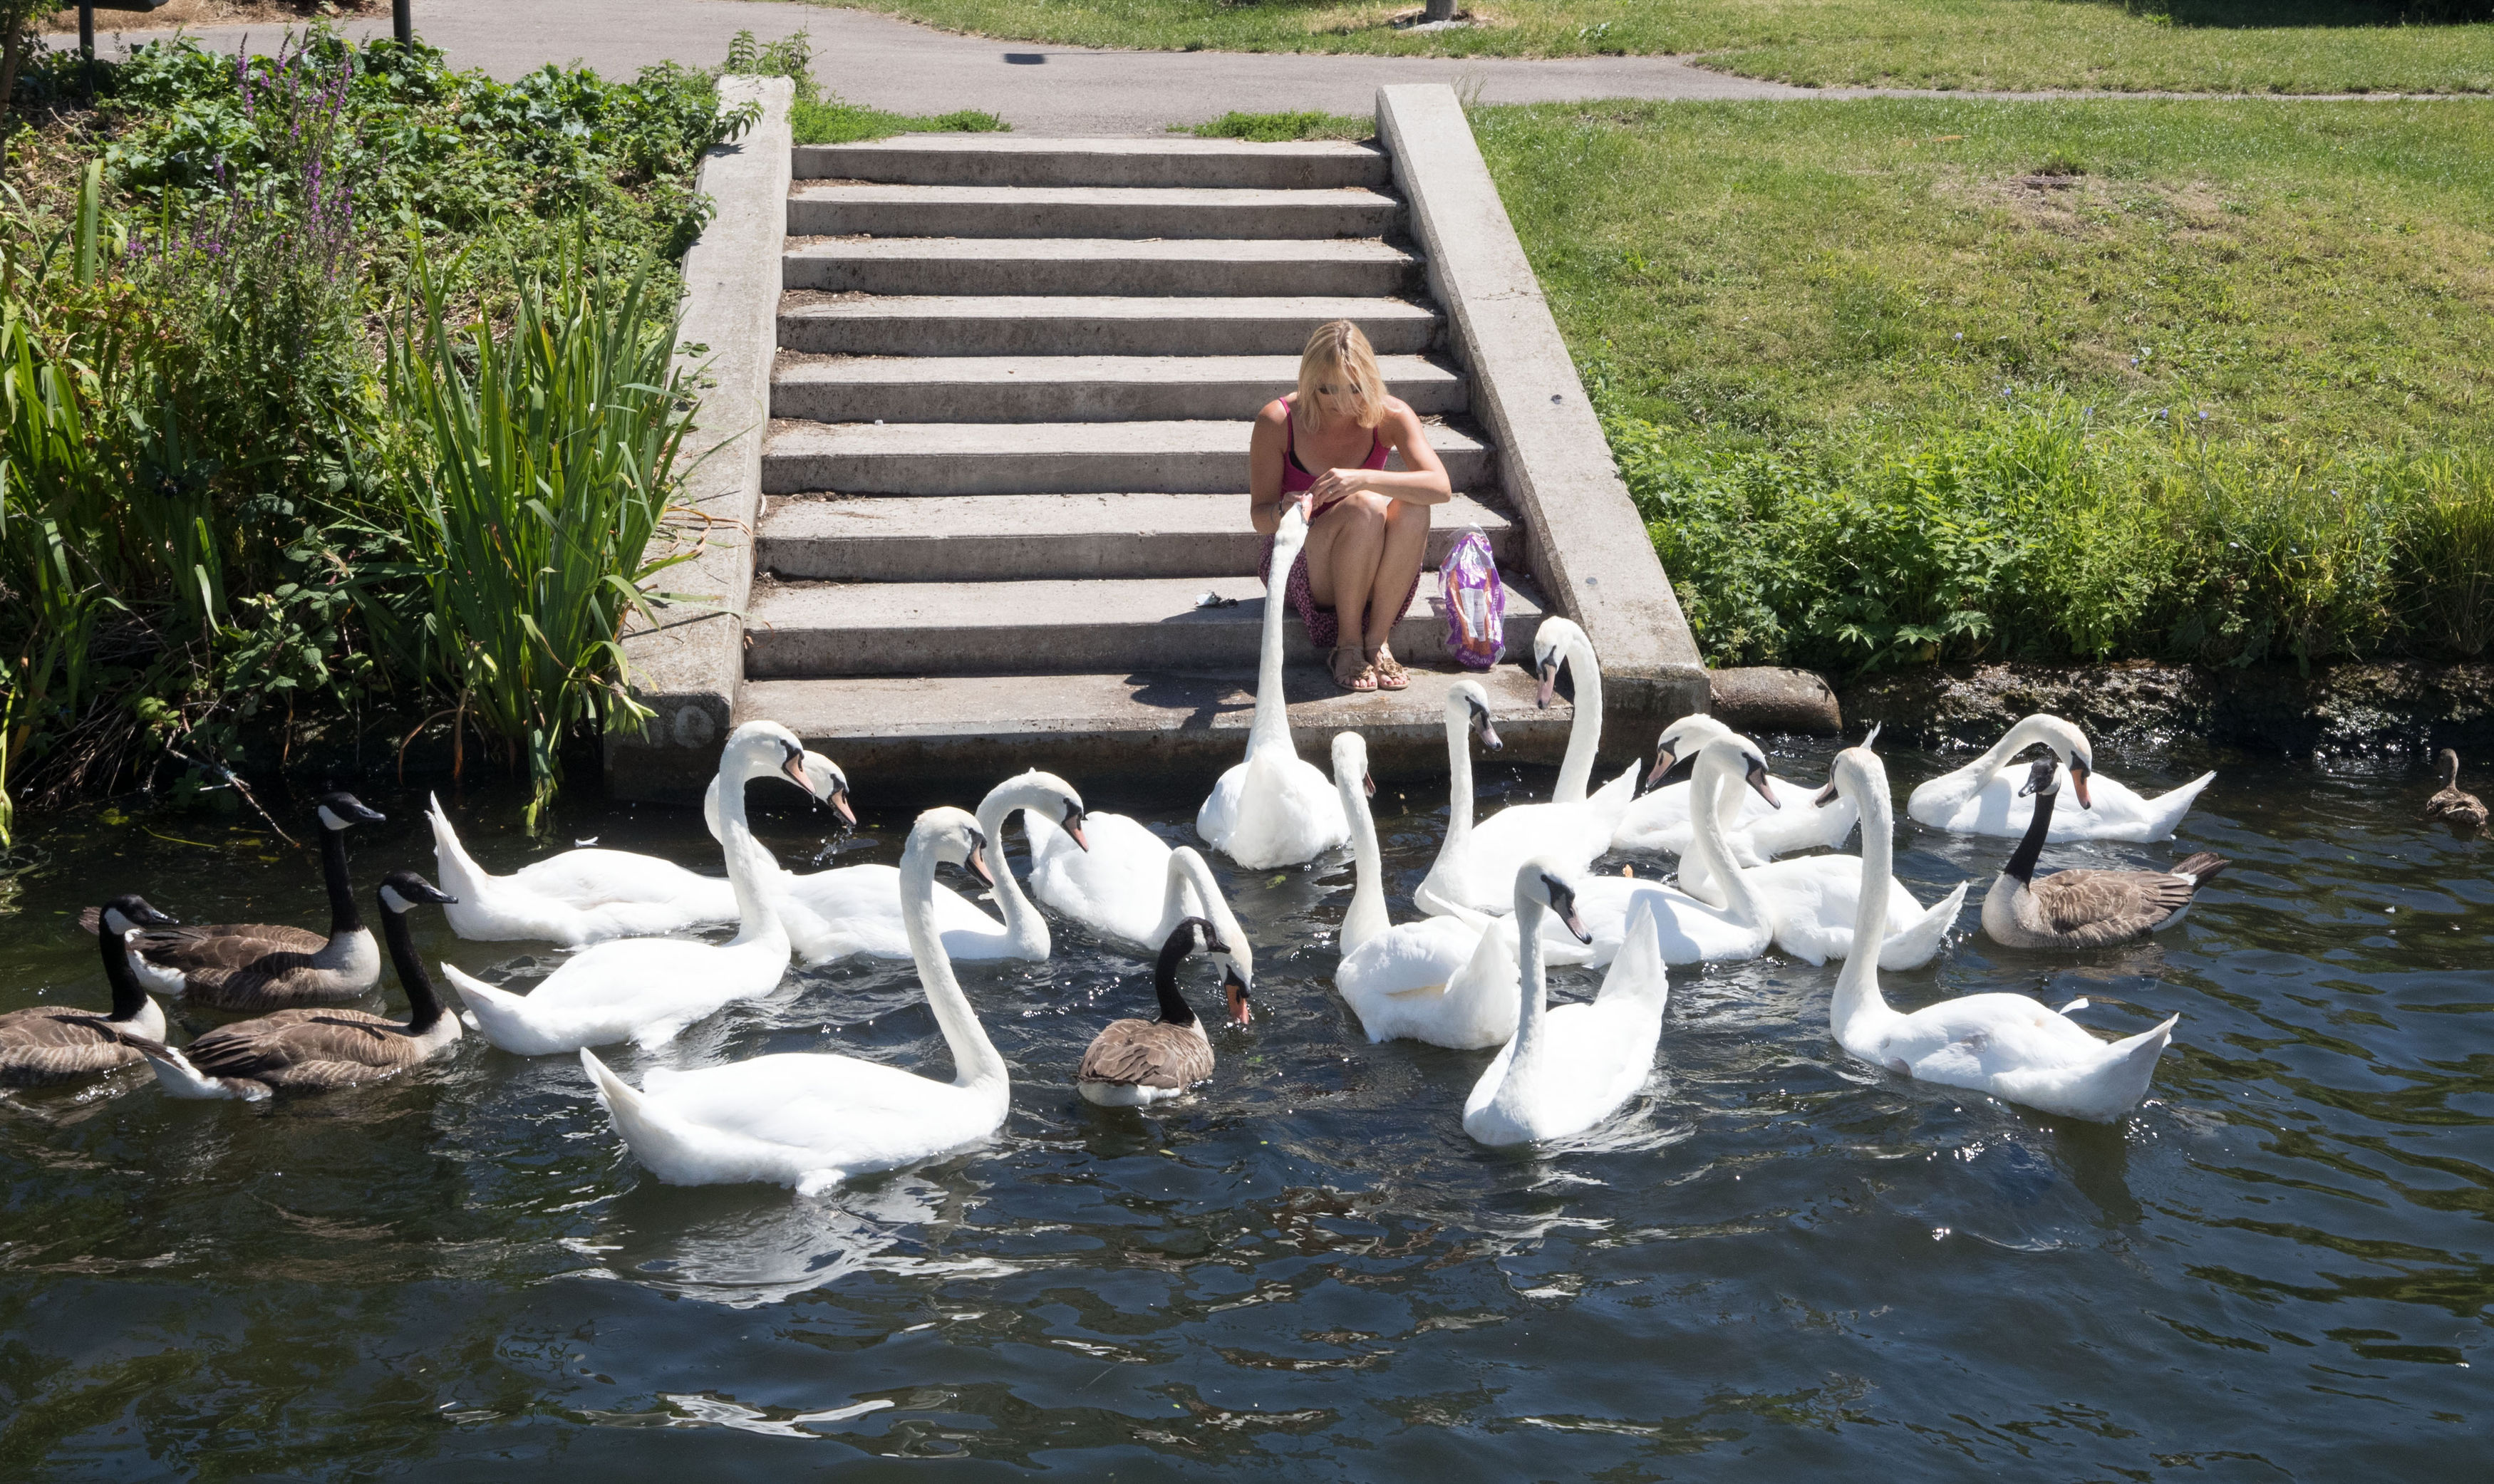 A lady feeding the swans